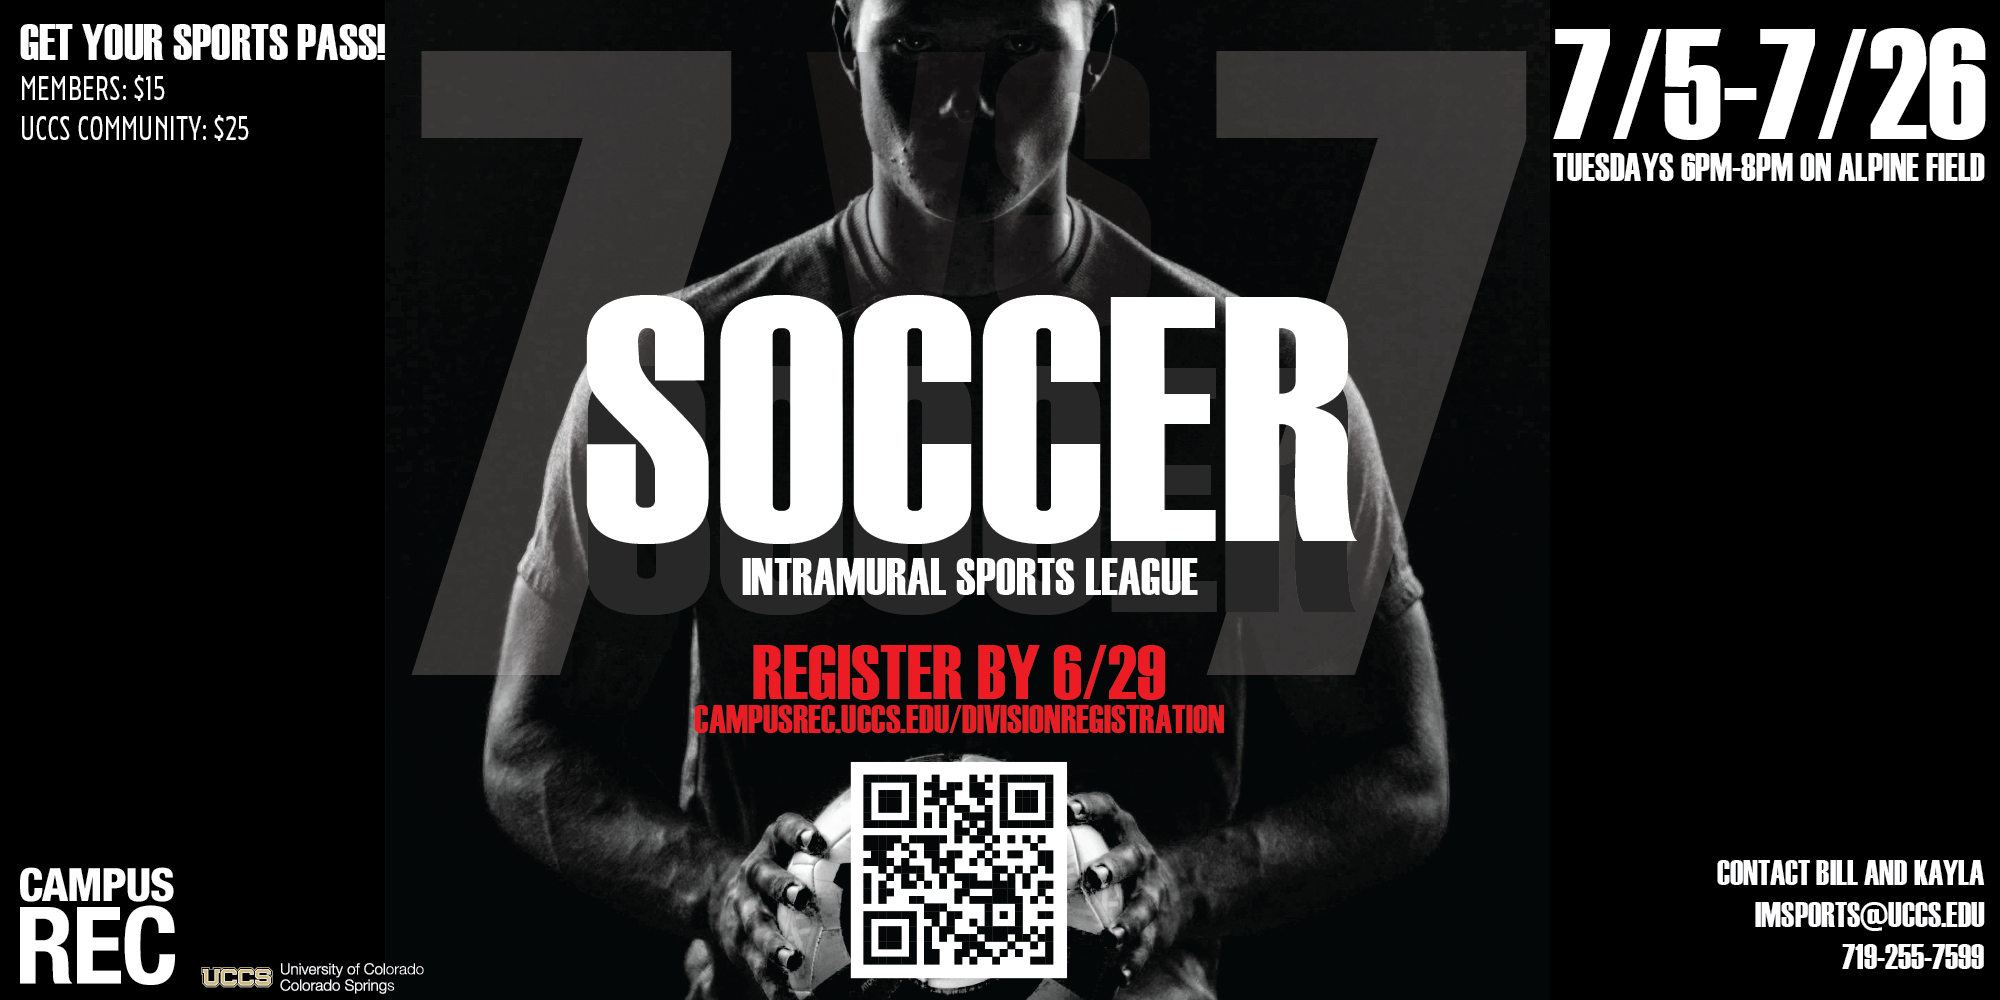 7v7 Intramural Soccer League, Registration Deadline 6/29 at 11:59pm